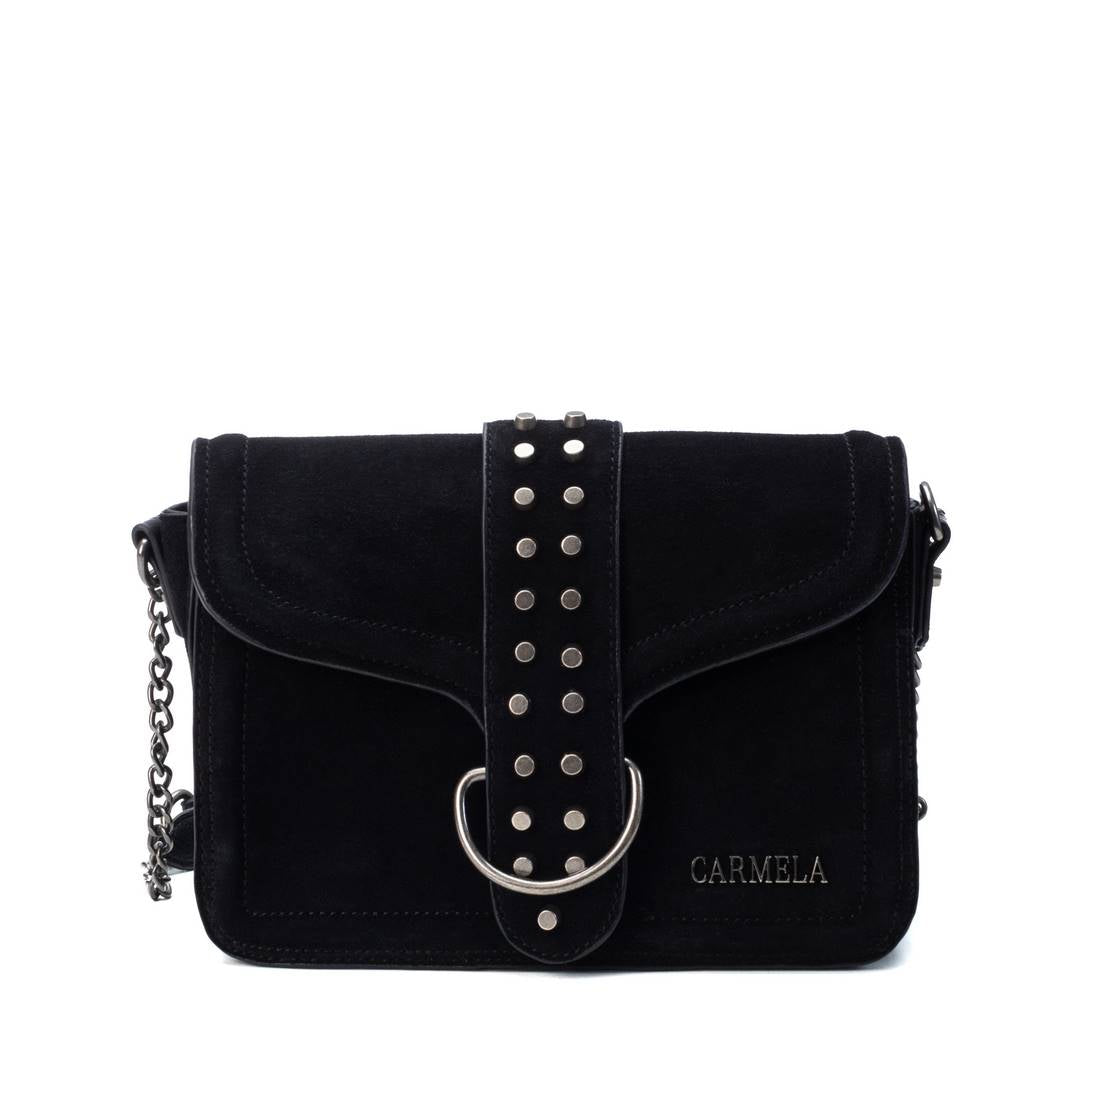 CARMELA WOMEN'S BAG 08659101